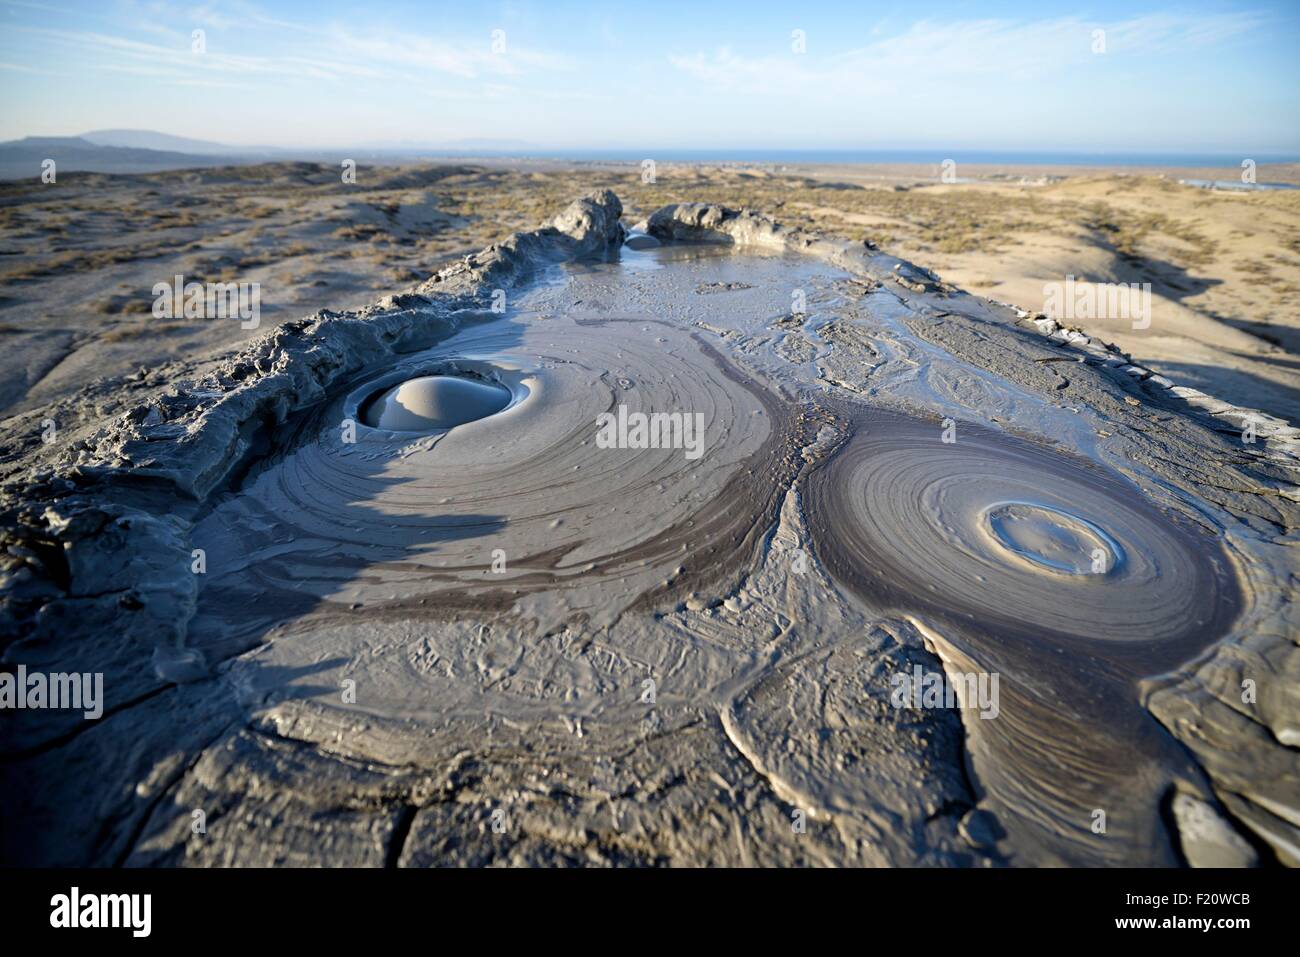 Azerbaijan, Qobustan, mud volcano Stock Photo